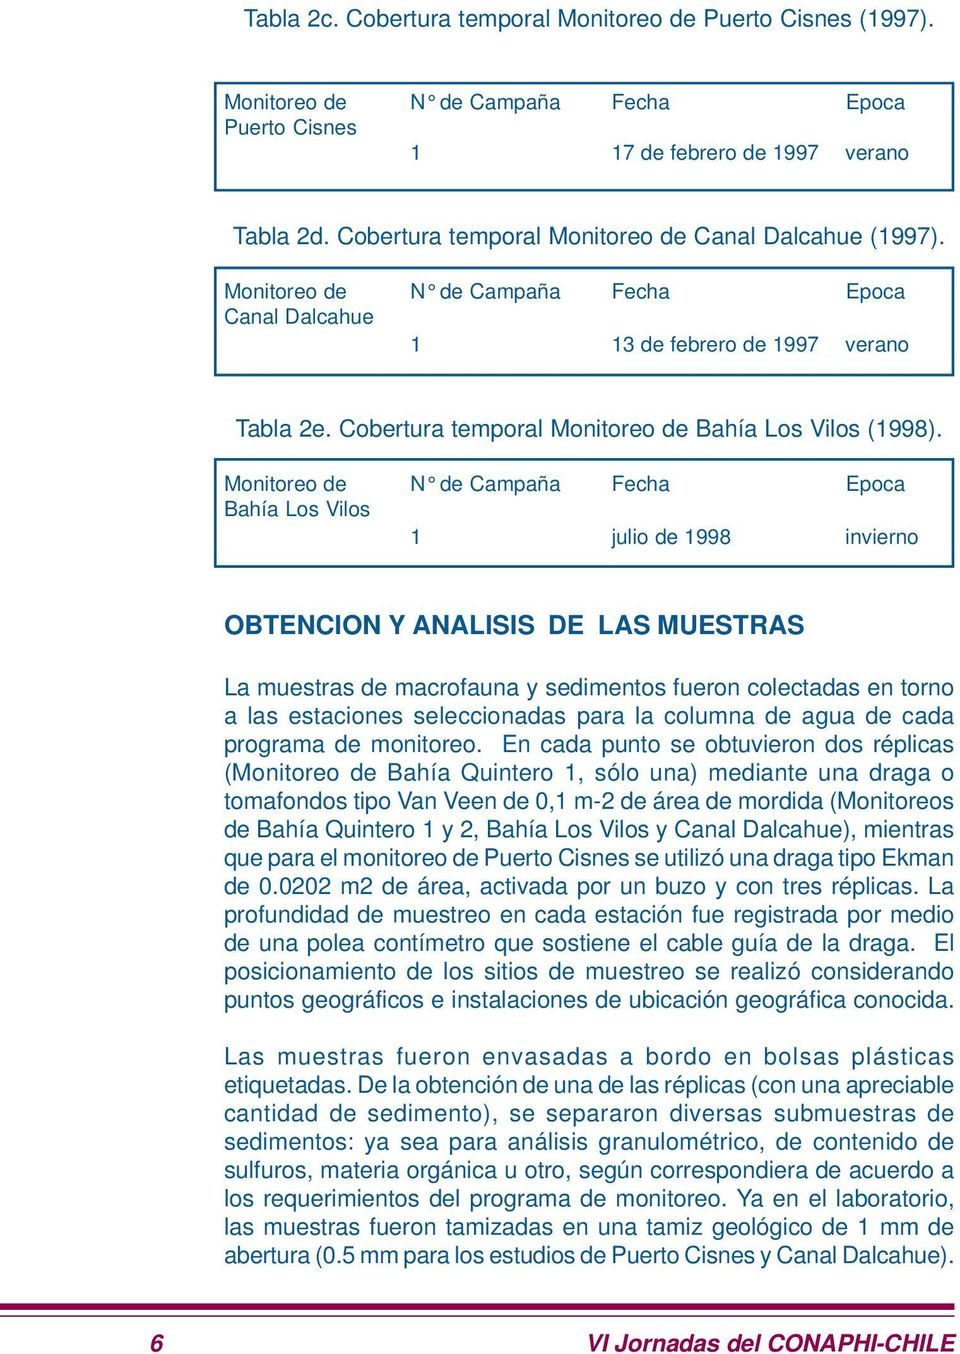 Cobertura temporal Monitoreo de Bahía Los Vilos (1998).